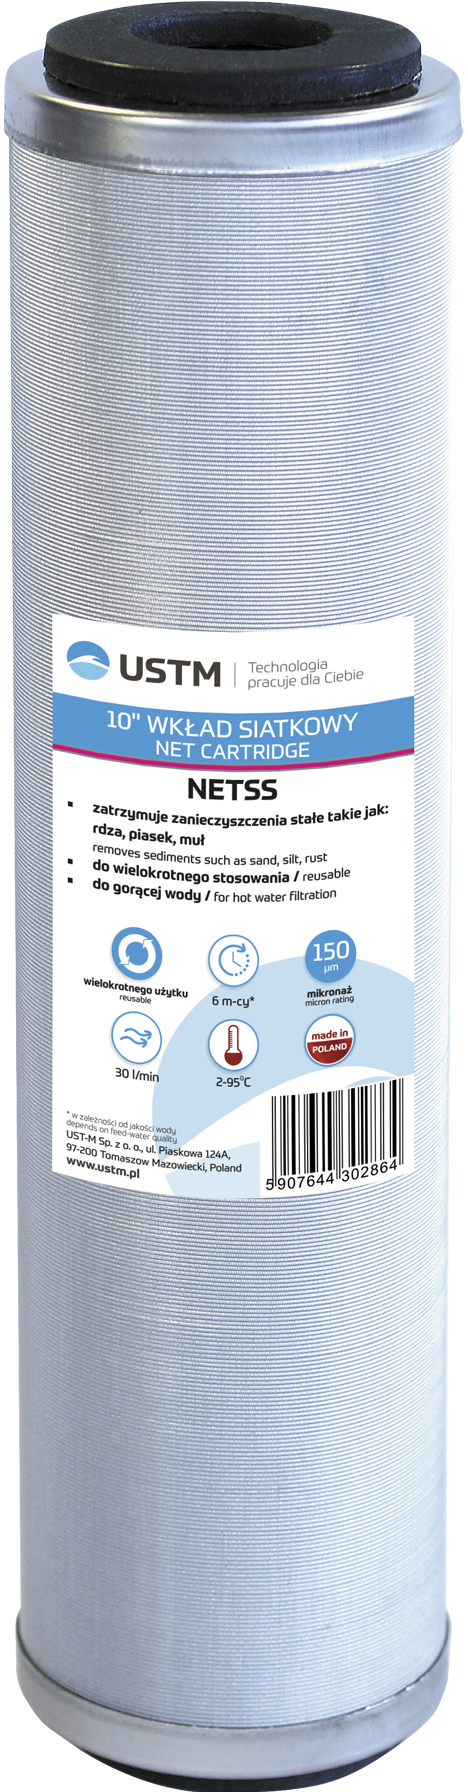 Характеристики картридж для фильтра USTM NETSS